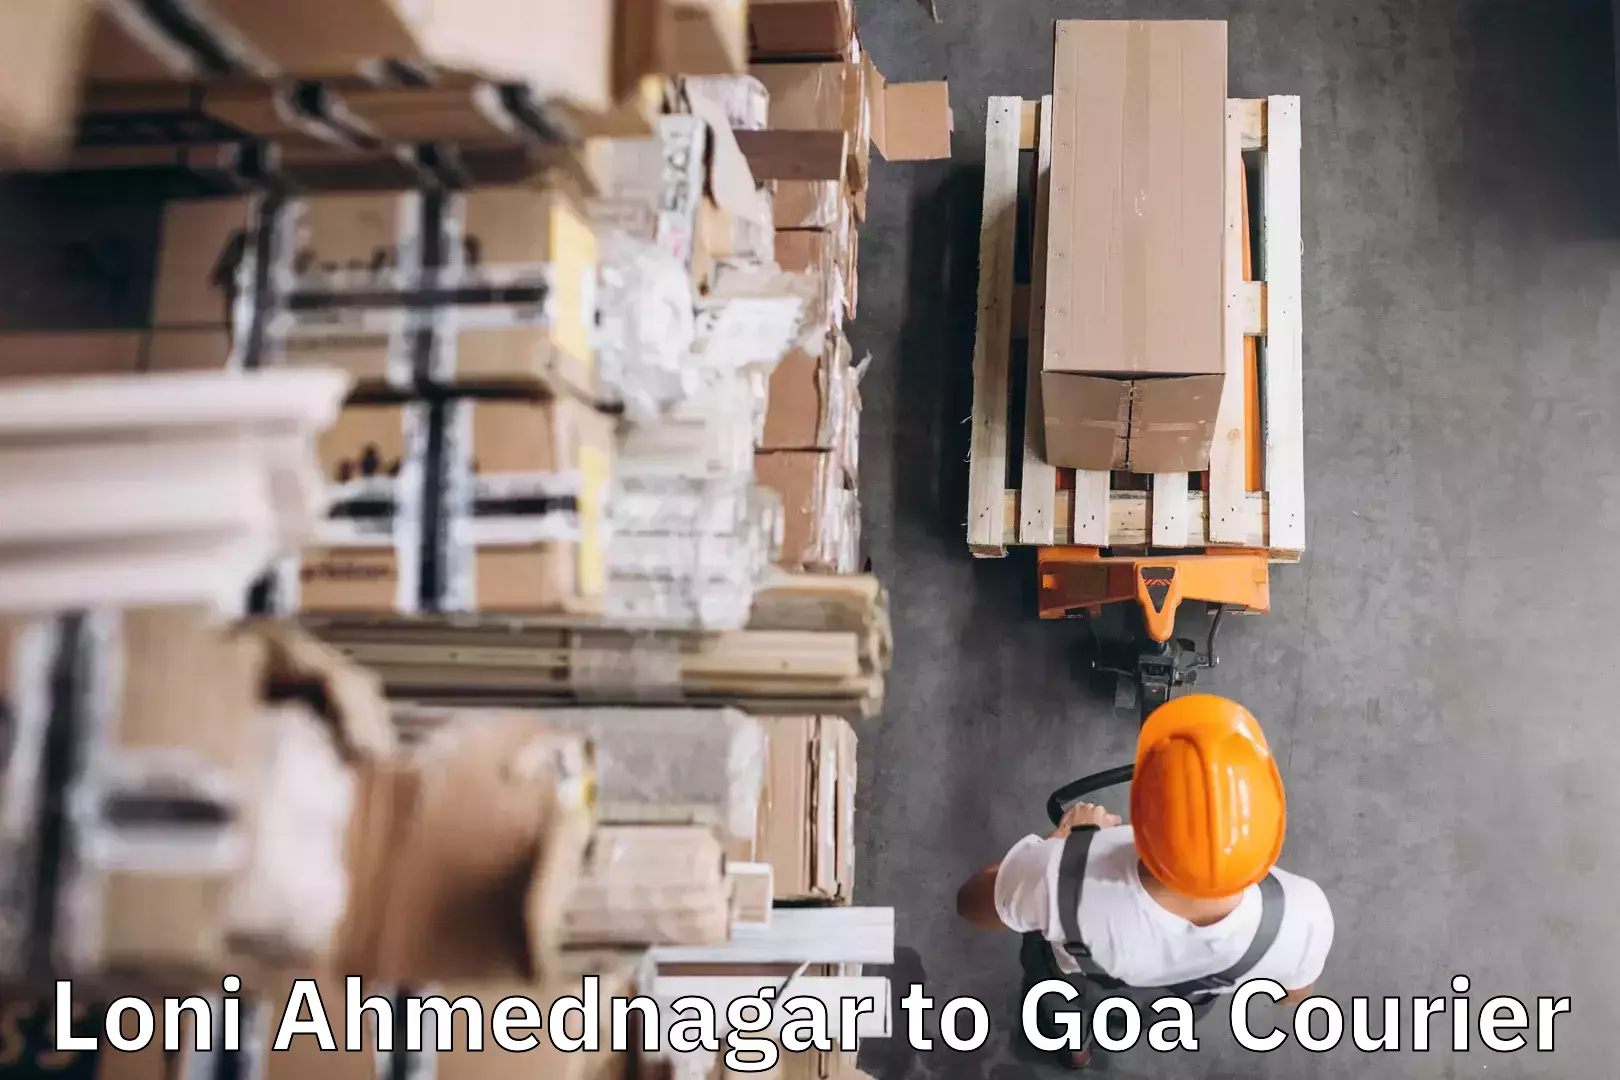 Luggage shipment processing Loni Ahmednagar to Goa